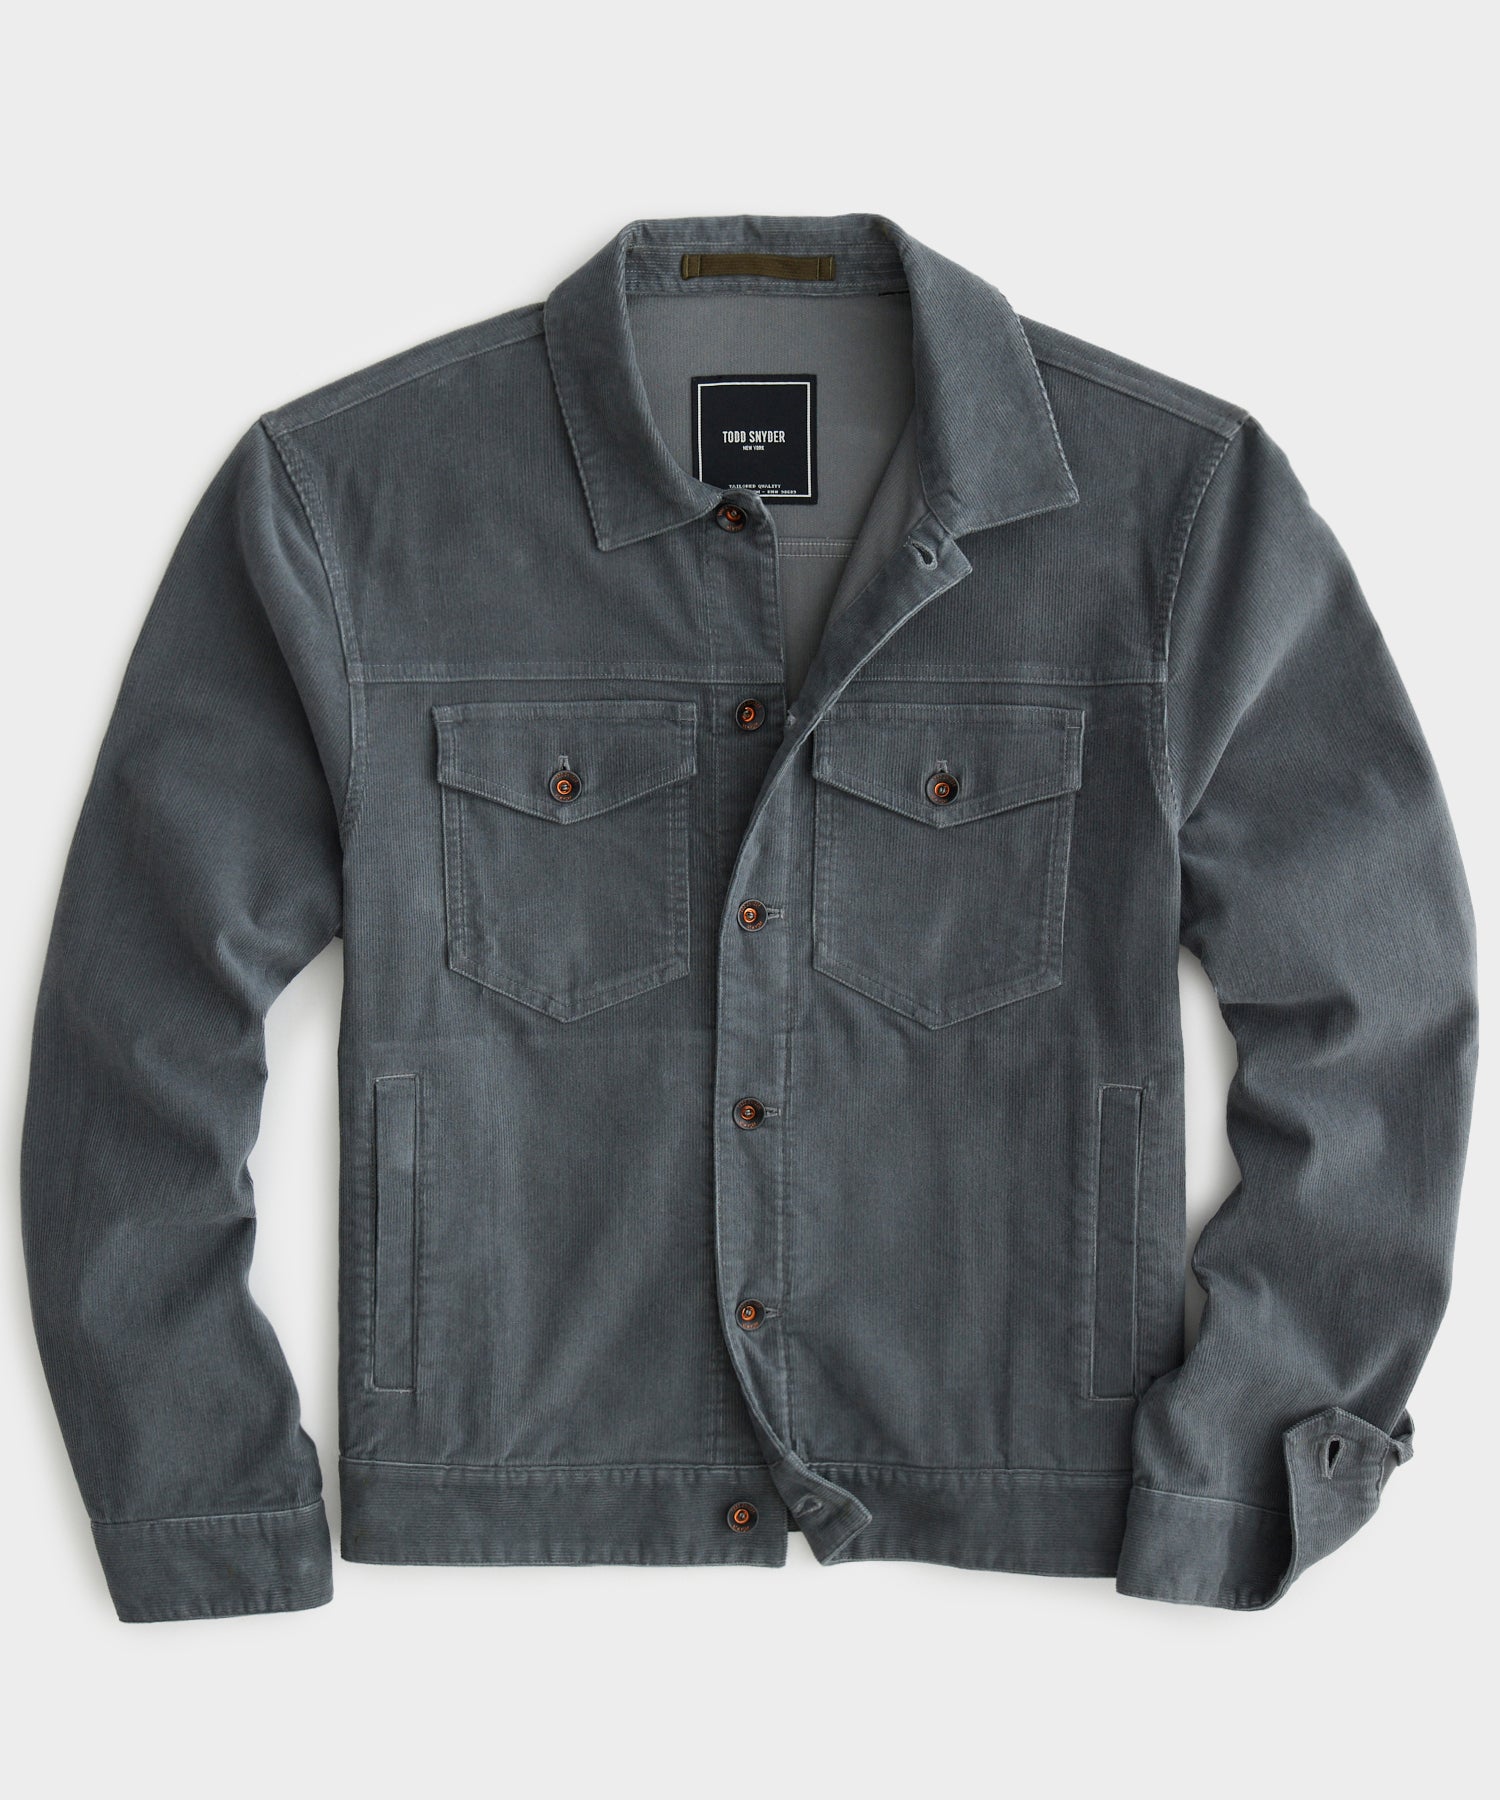 VERTICALS Full Sleeve Washed Men Denim Jacket - Buy VERTICALS Full Sleeve  Washed Men Denim Jacket Online at Best Prices in India | Flipkart.com